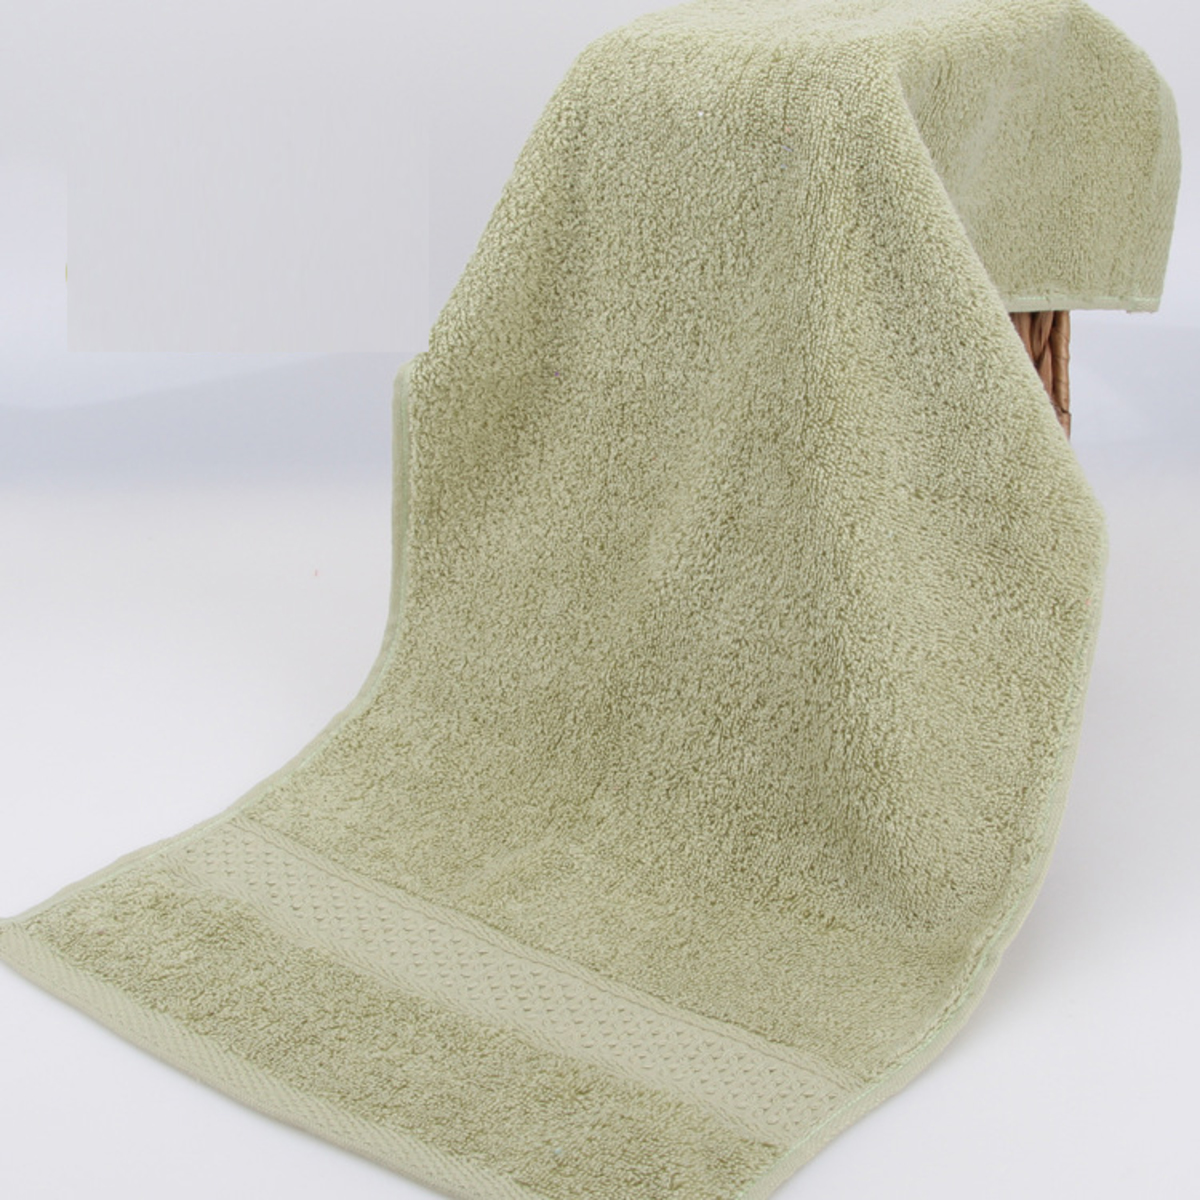 糖果色超柔軟純棉毛巾 淺綠色(74x33cm)(平行進口)